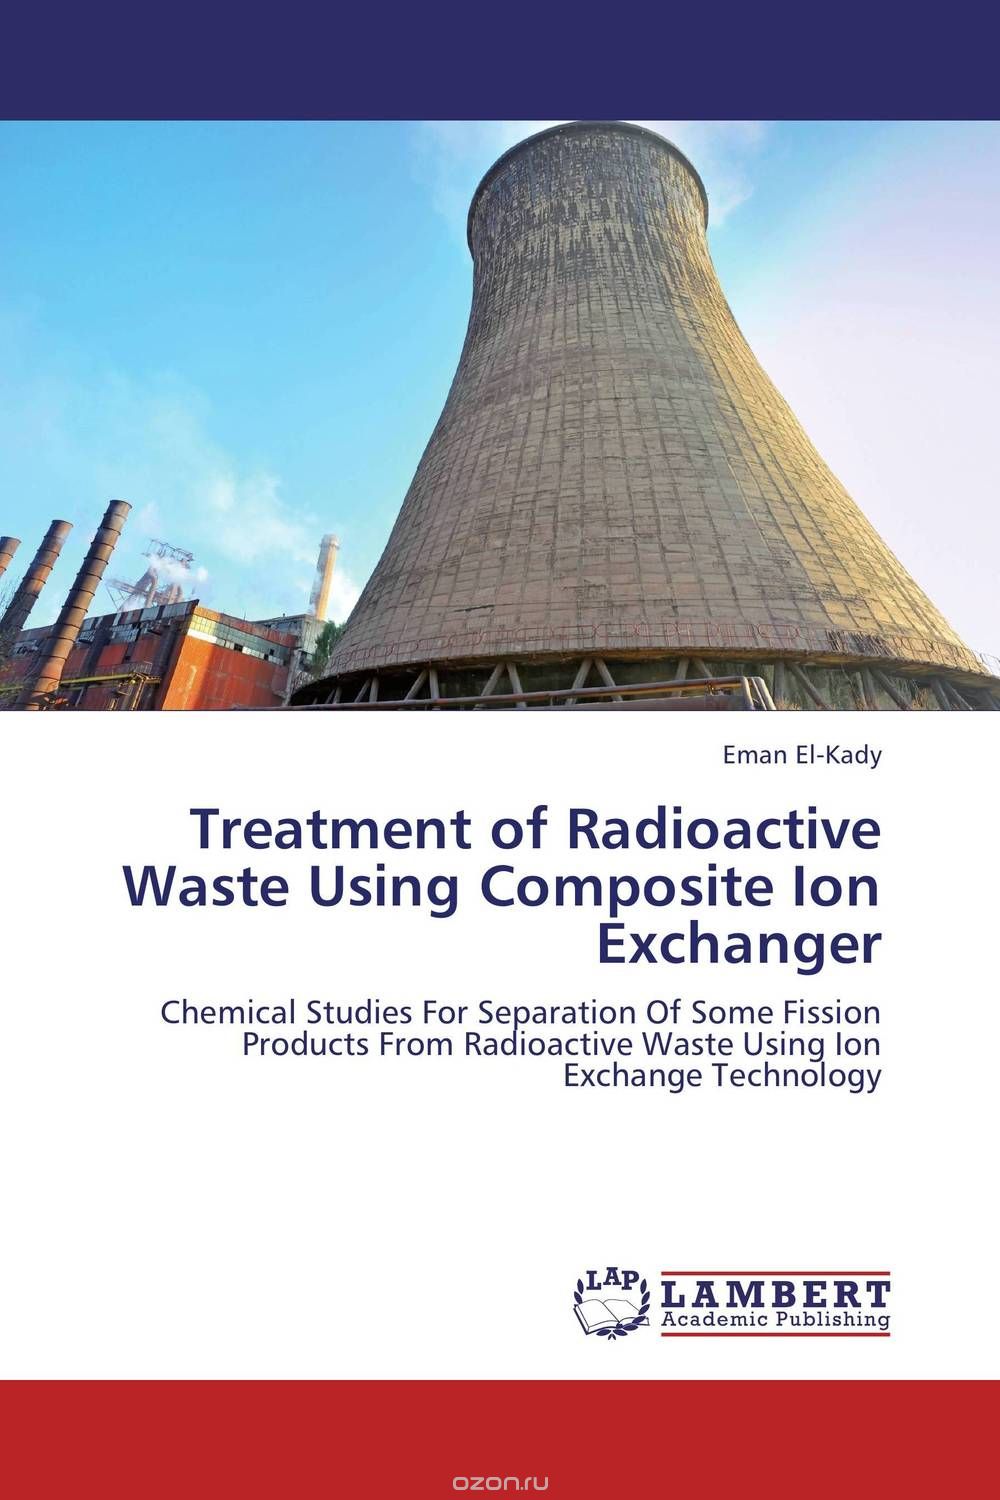 Скачать книгу "Treatment of Radioactive Waste Using Composite Ion Exchanger"